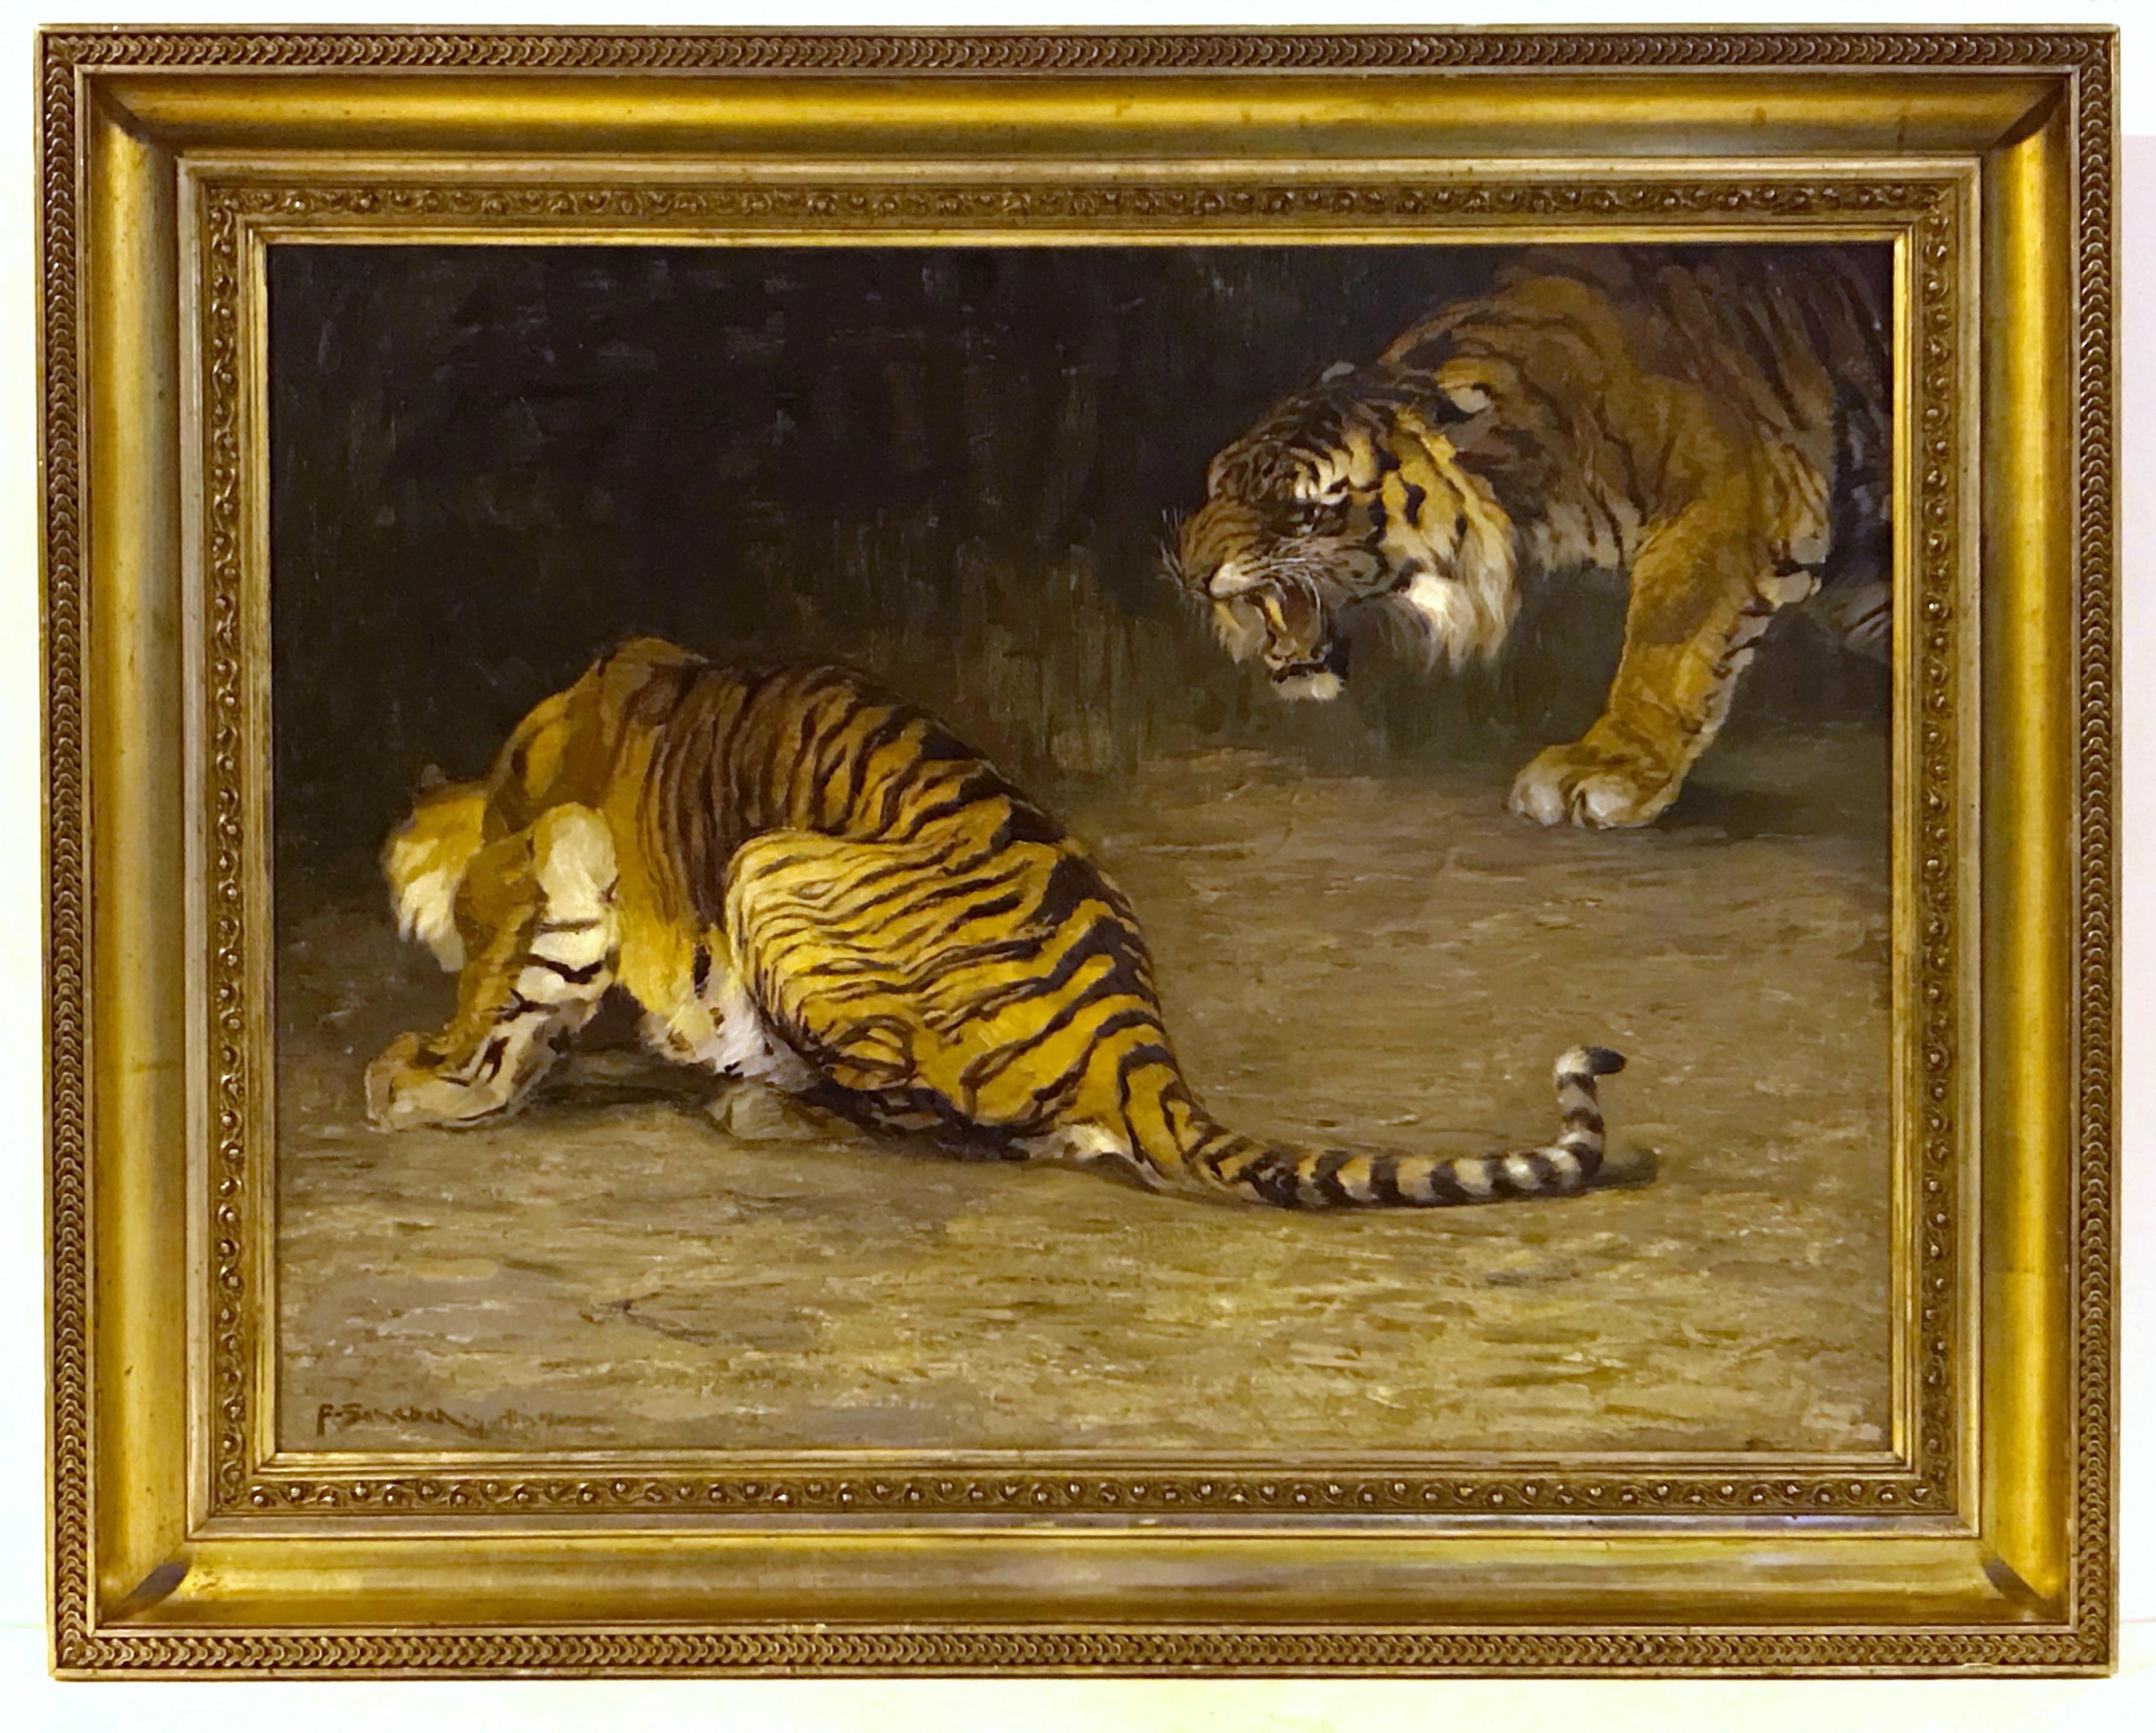 Ferdinand SCHEBEK   Animal Painting - Tigers of Bengal  